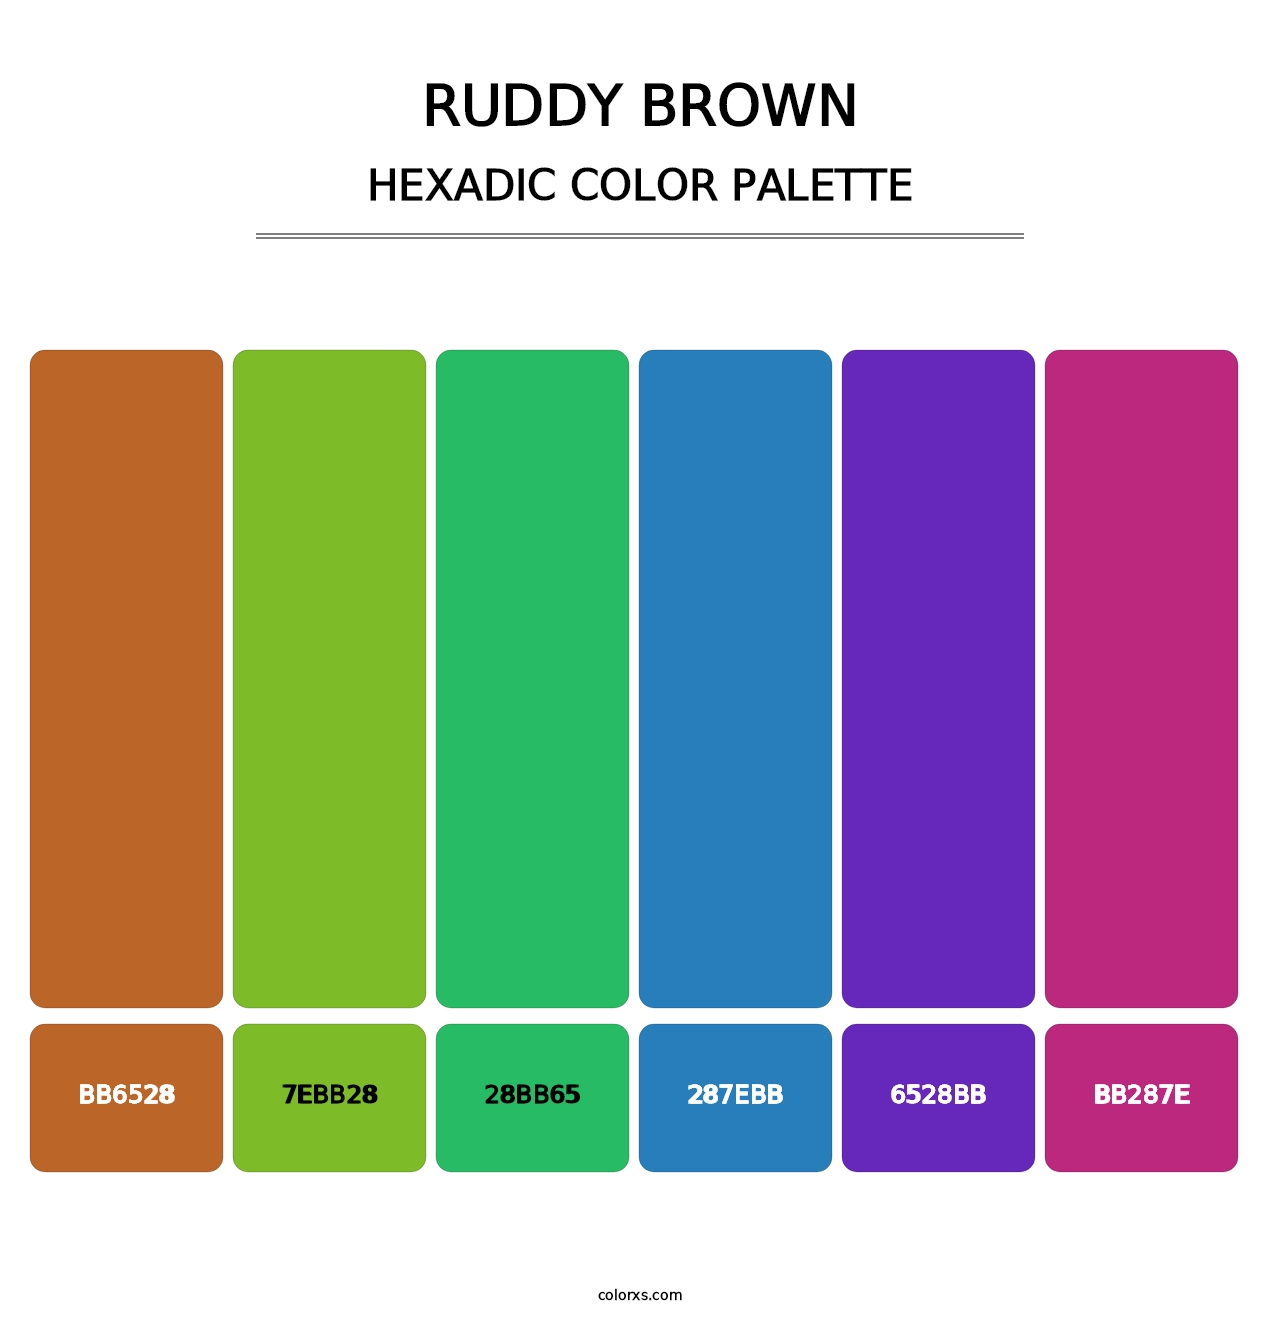 Ruddy Brown - Hexadic Color Palette